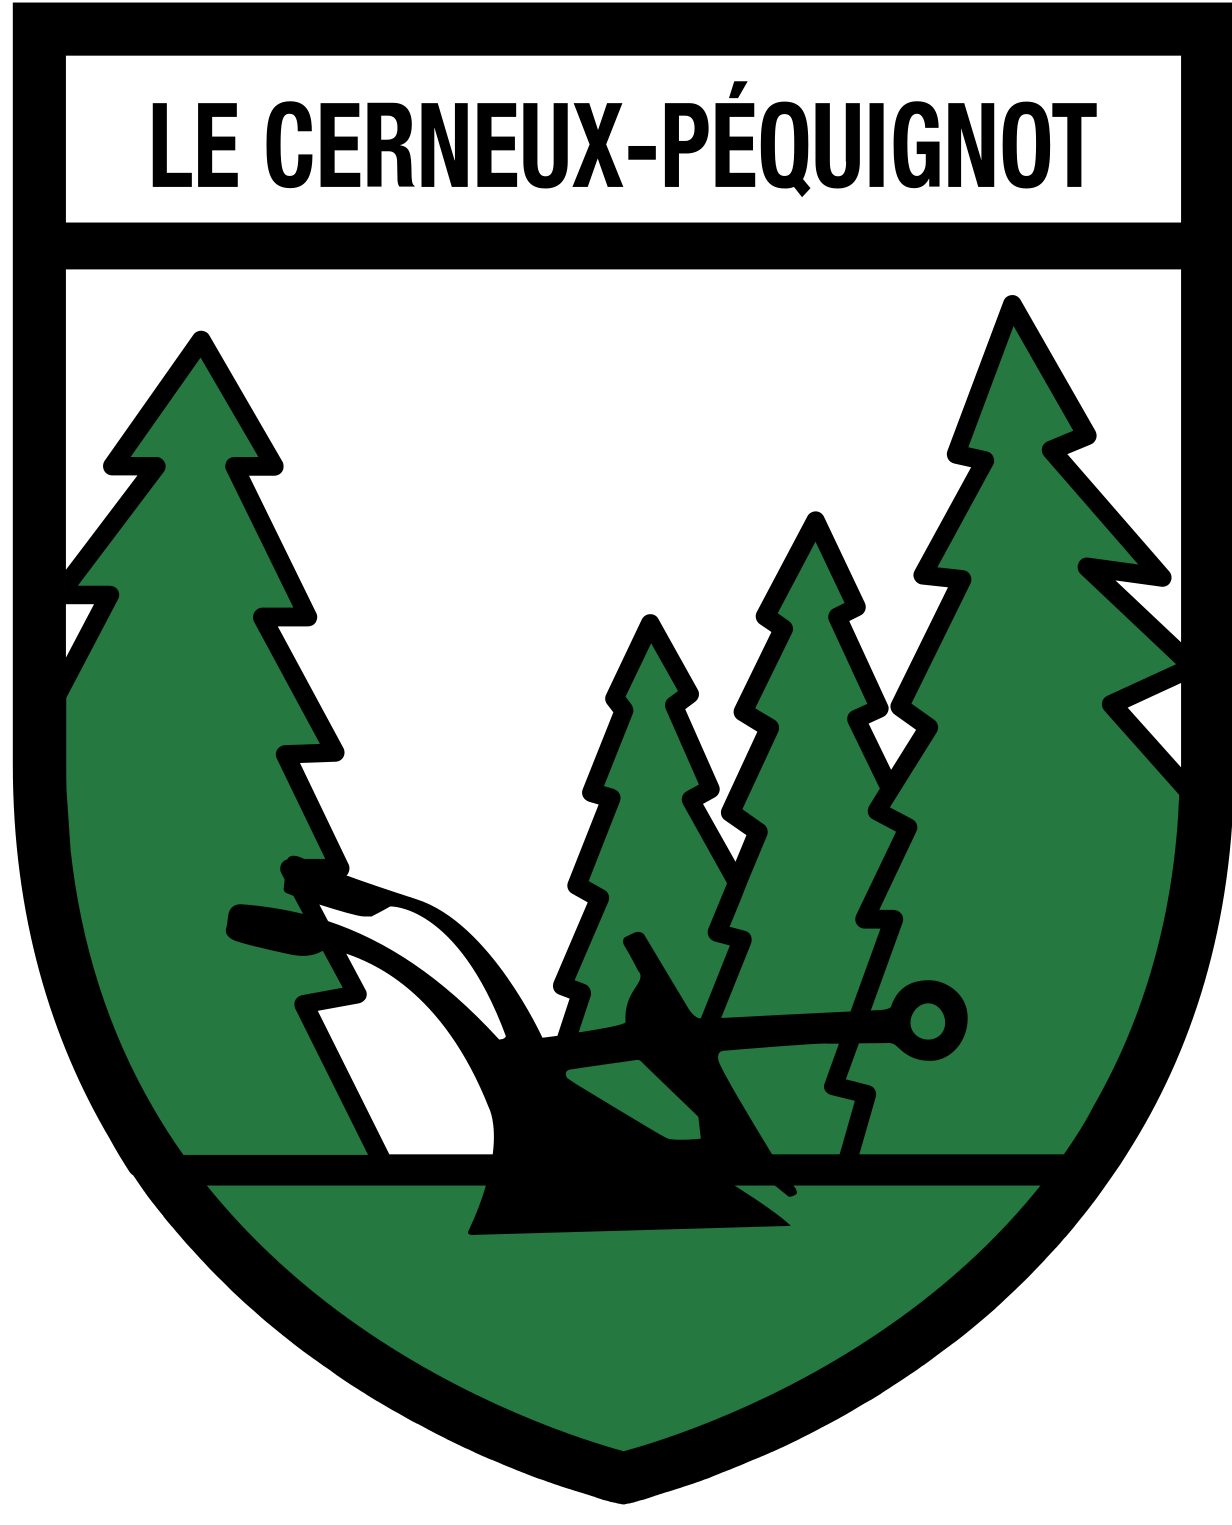 Le Cerneux-Péquignot logo